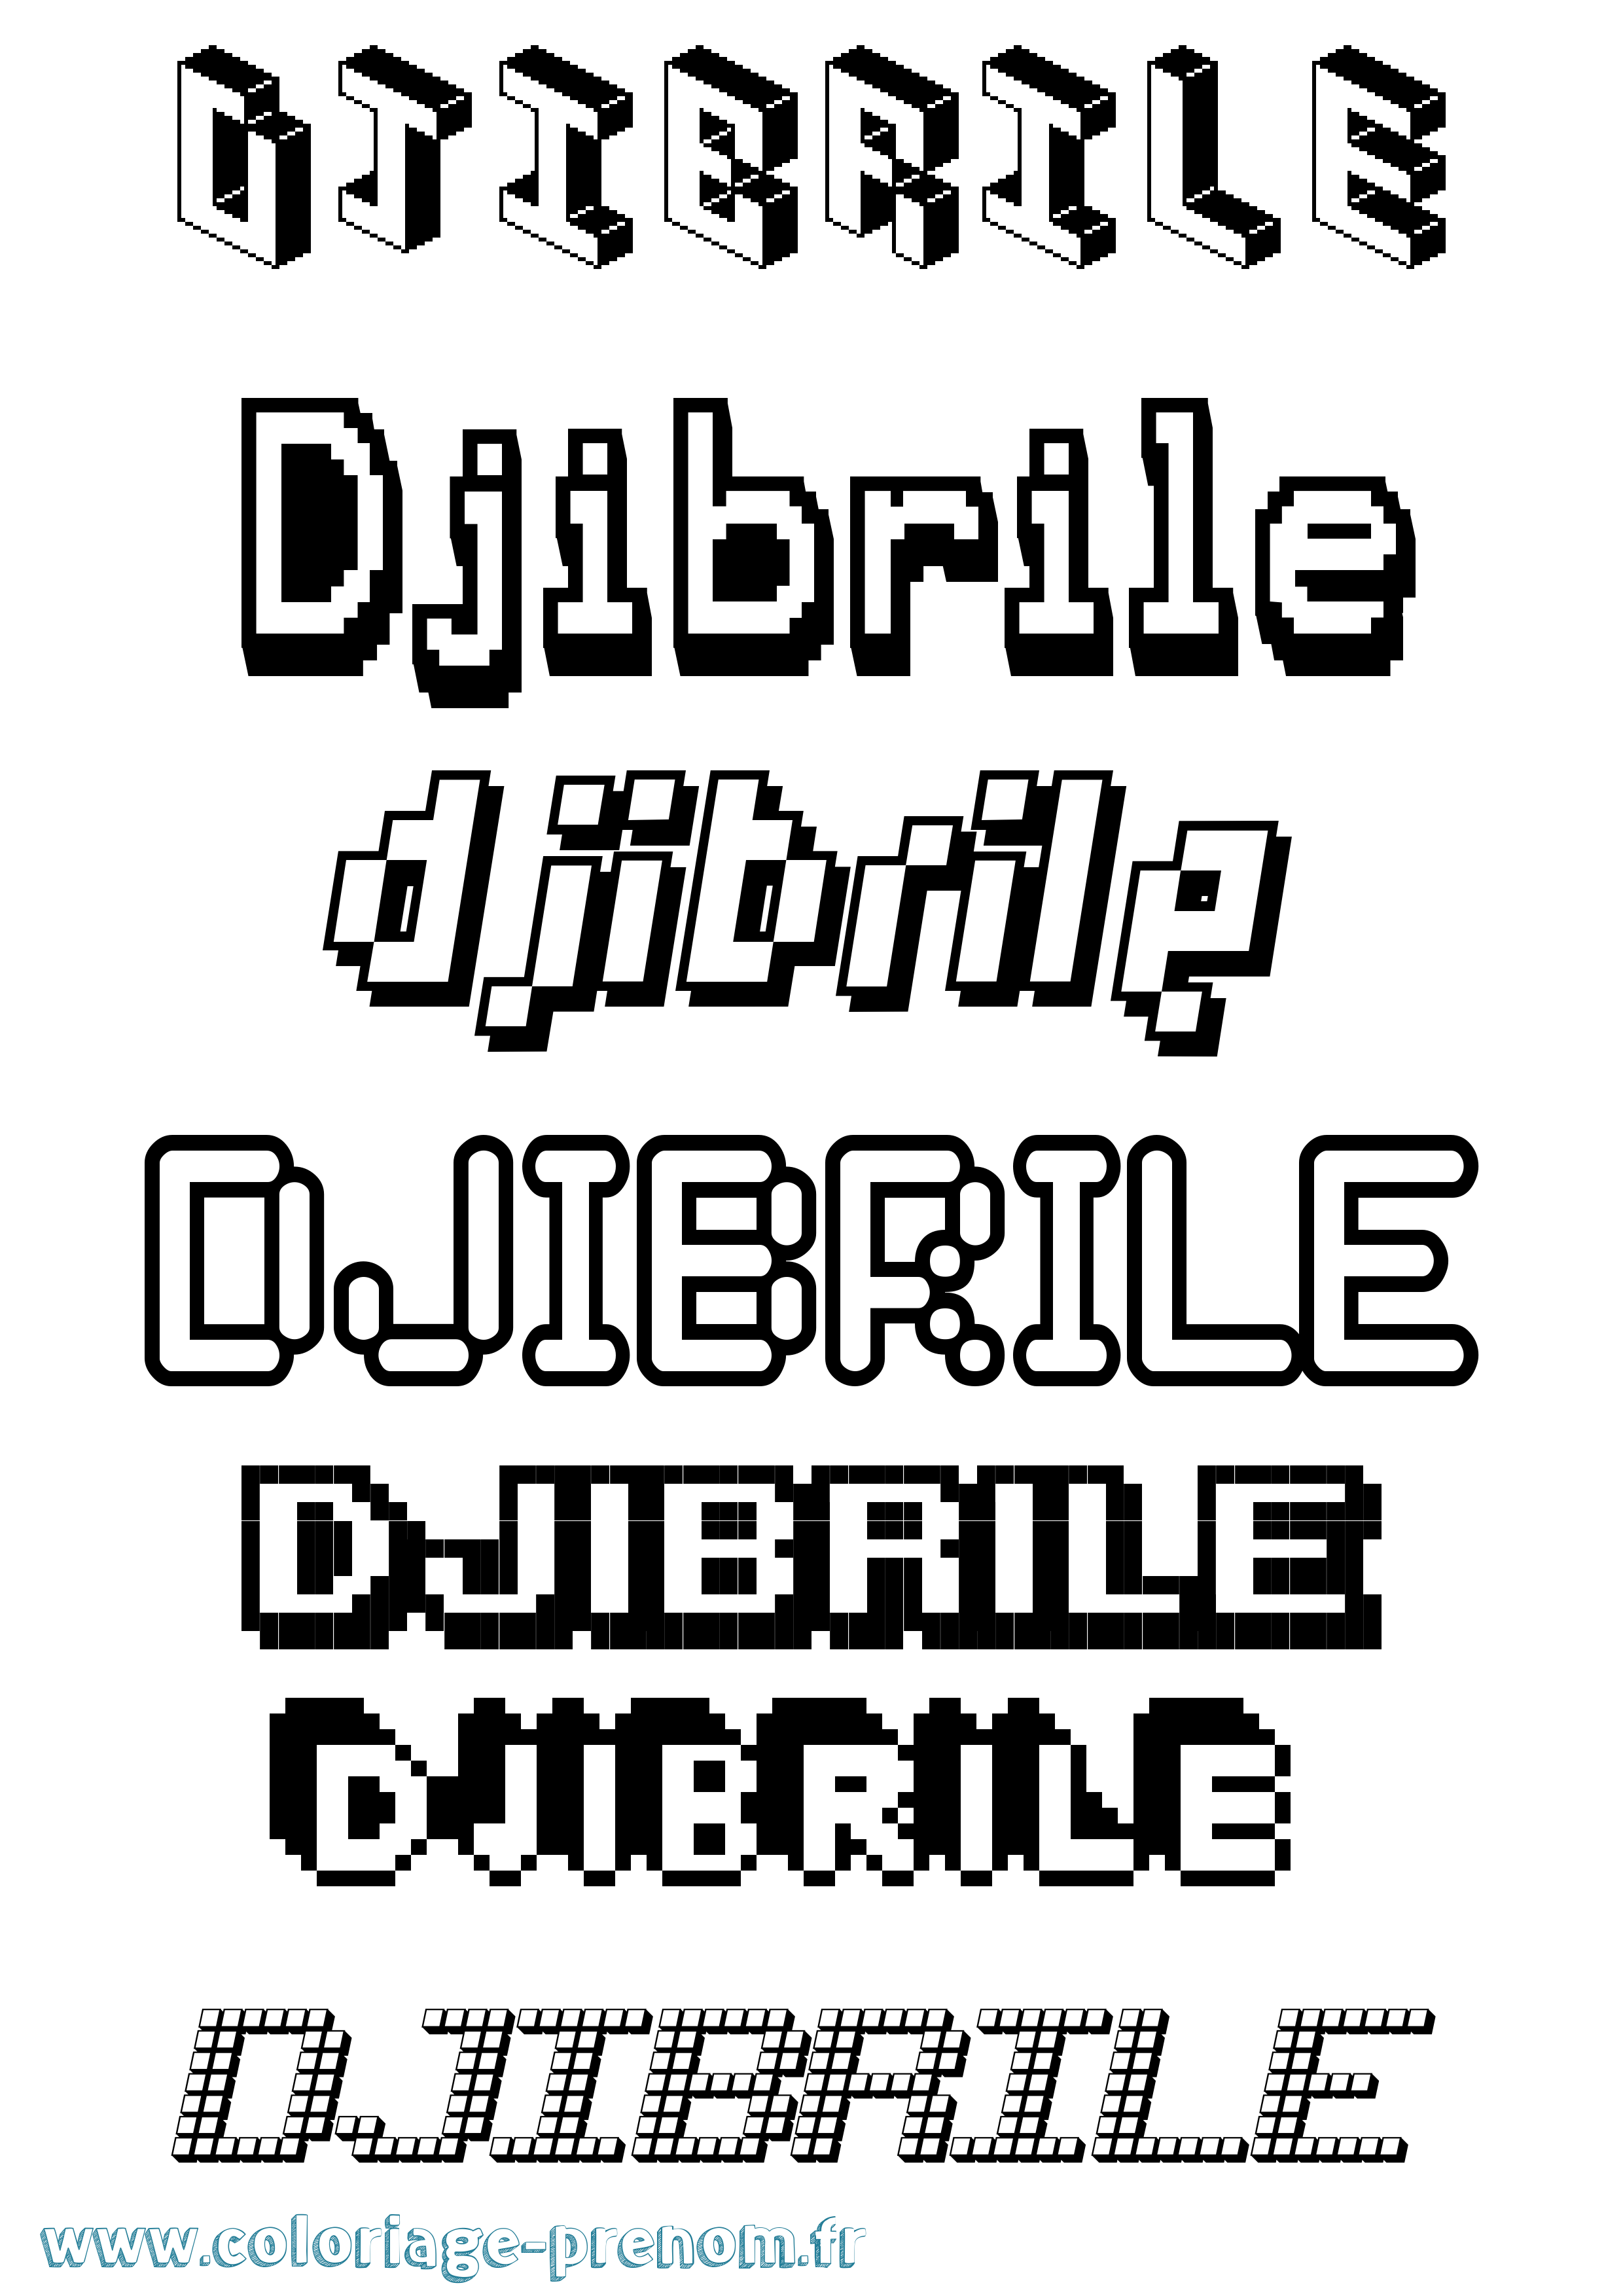 Coloriage prénom Djibrile Pixel